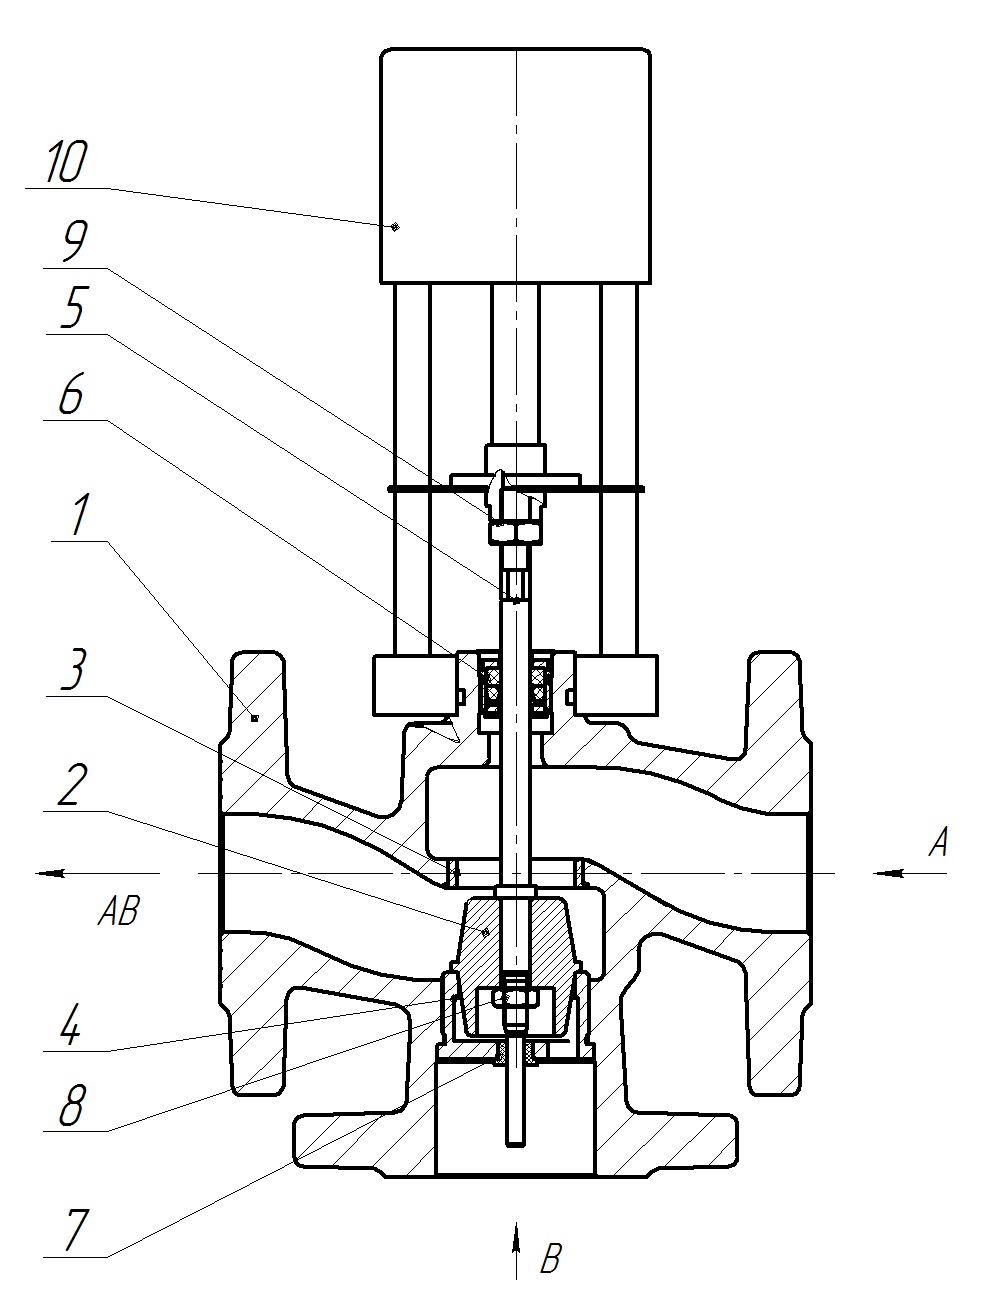 Клапан регулирующий трехходовой разделительный DN.ru 23ч901нж Ду65 Ру16 Kvs25 серый чугун СЧ20, фланцевый, Tmax до 150°С с электроприводом Катрабел TW-3000-XD220